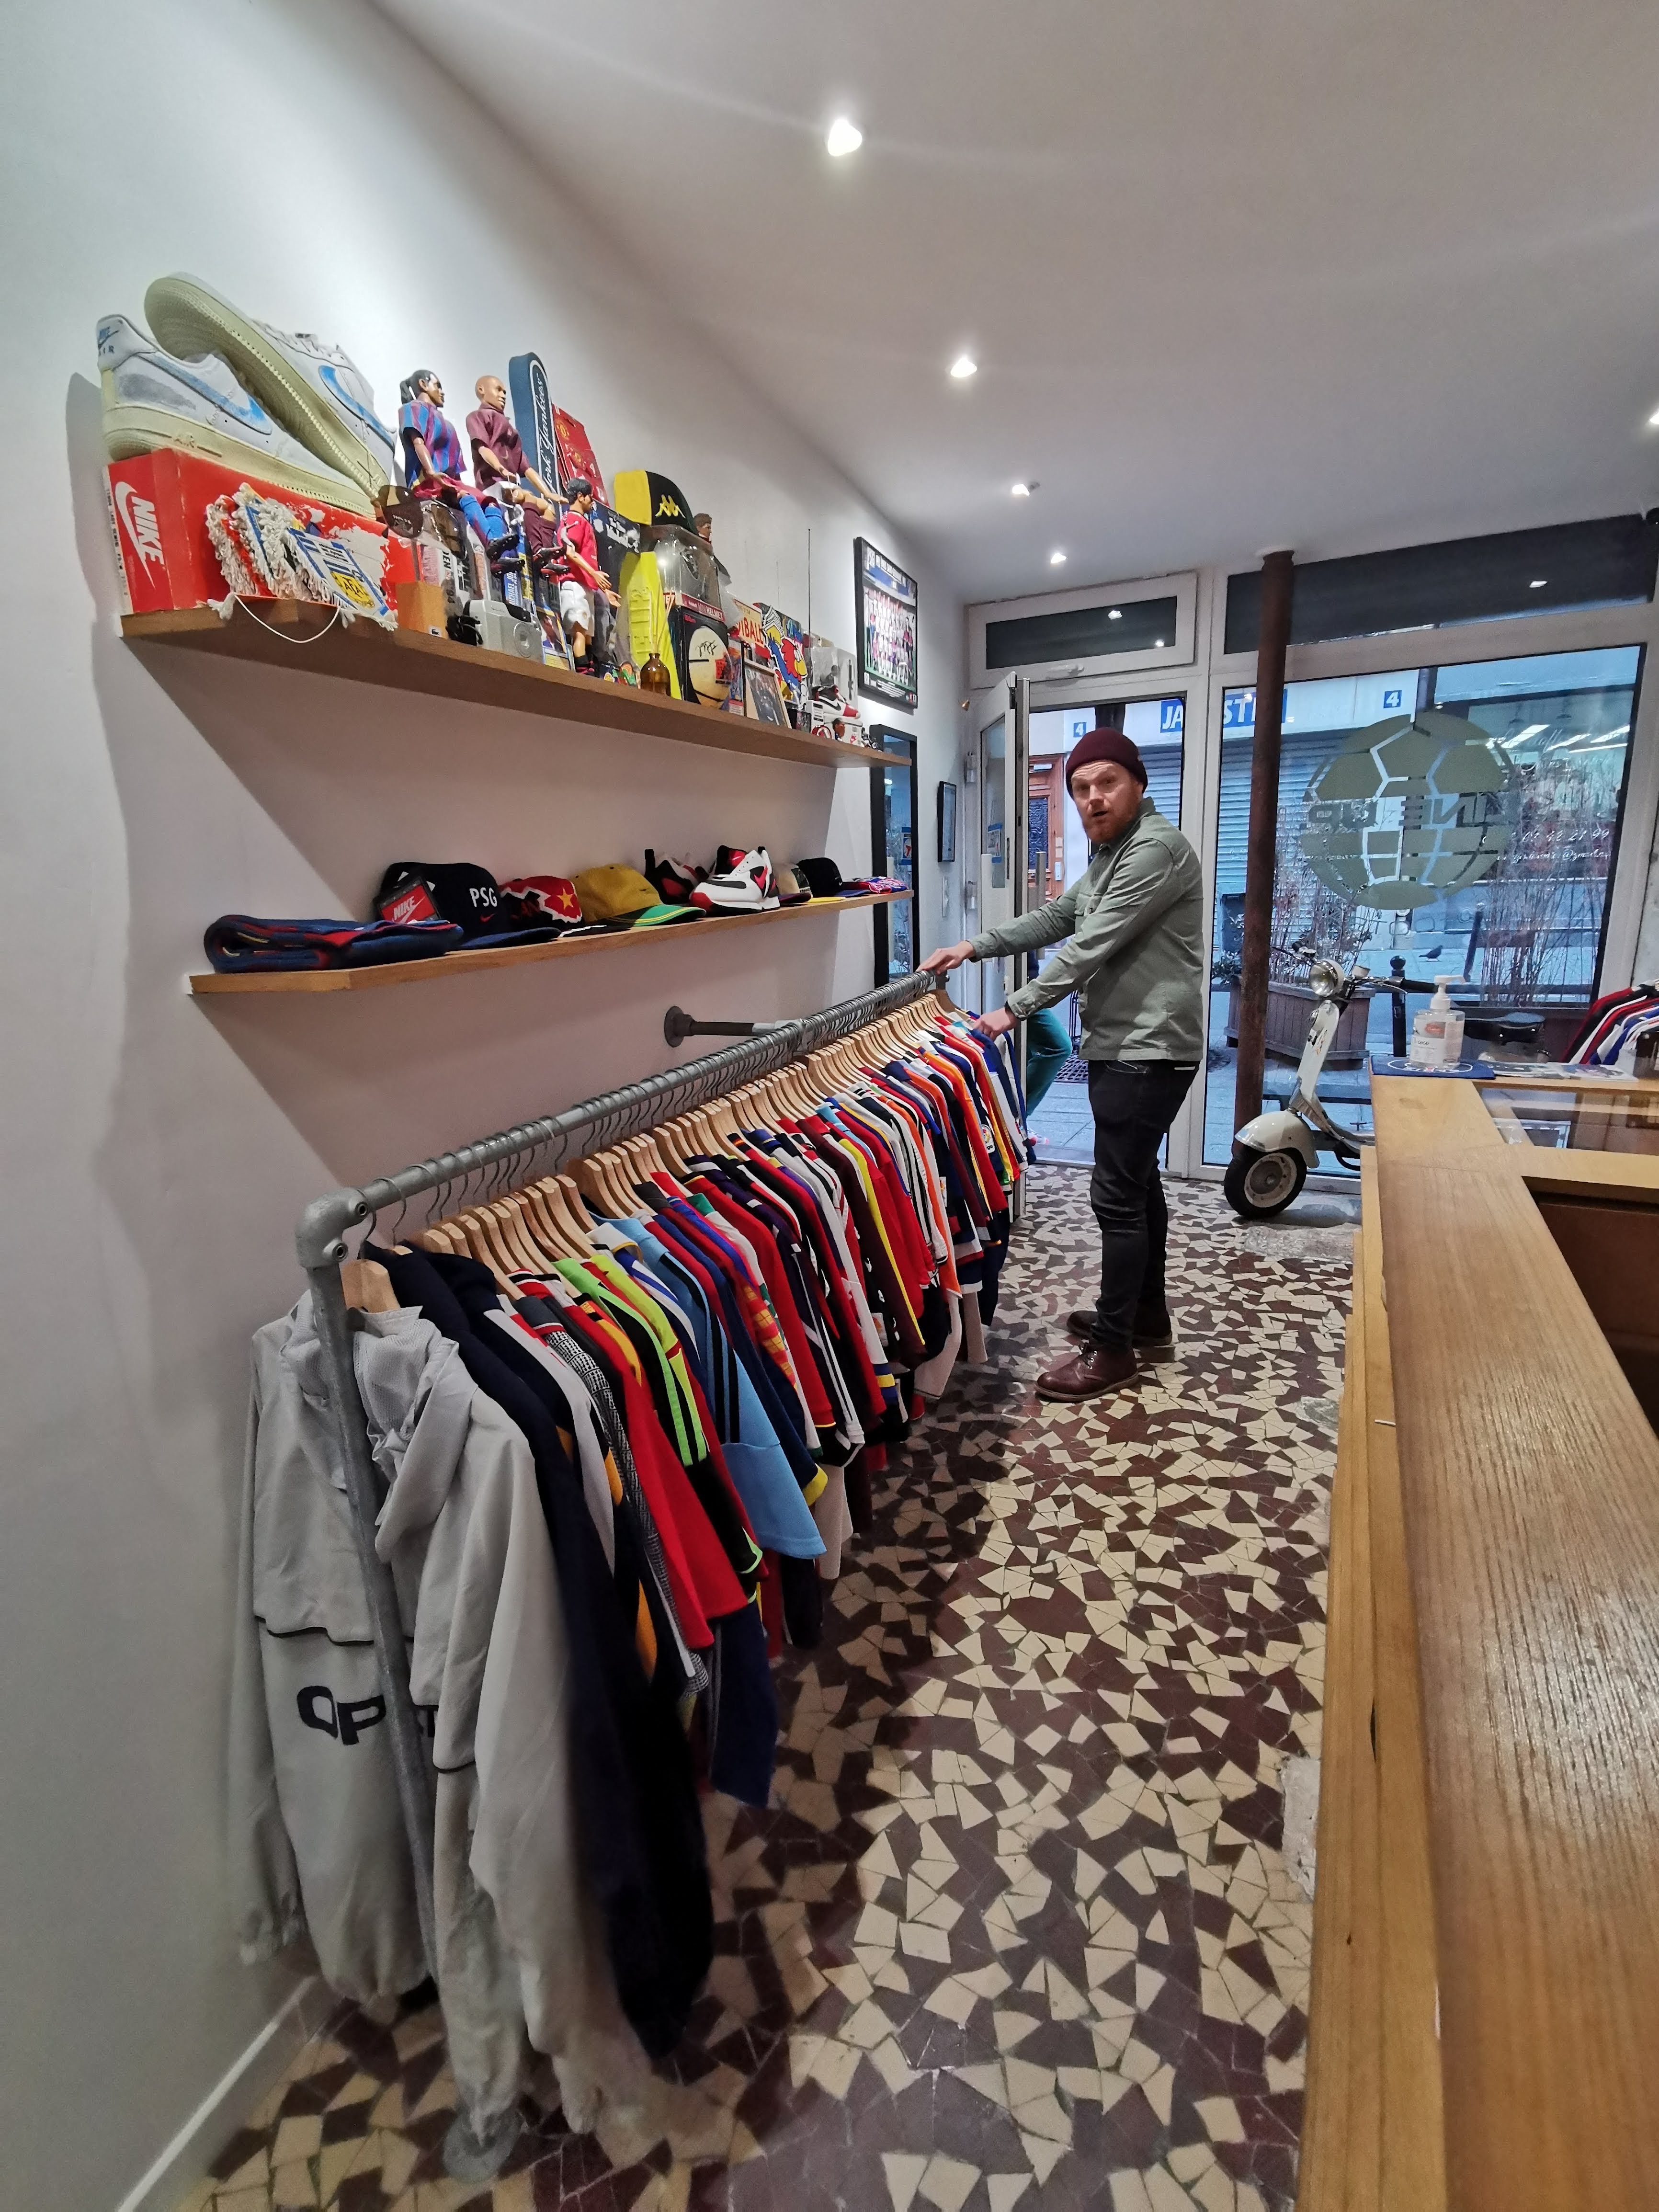 Matt Ketchell visita LineUp, un negozio di magliette da calcio vintage a Parigi